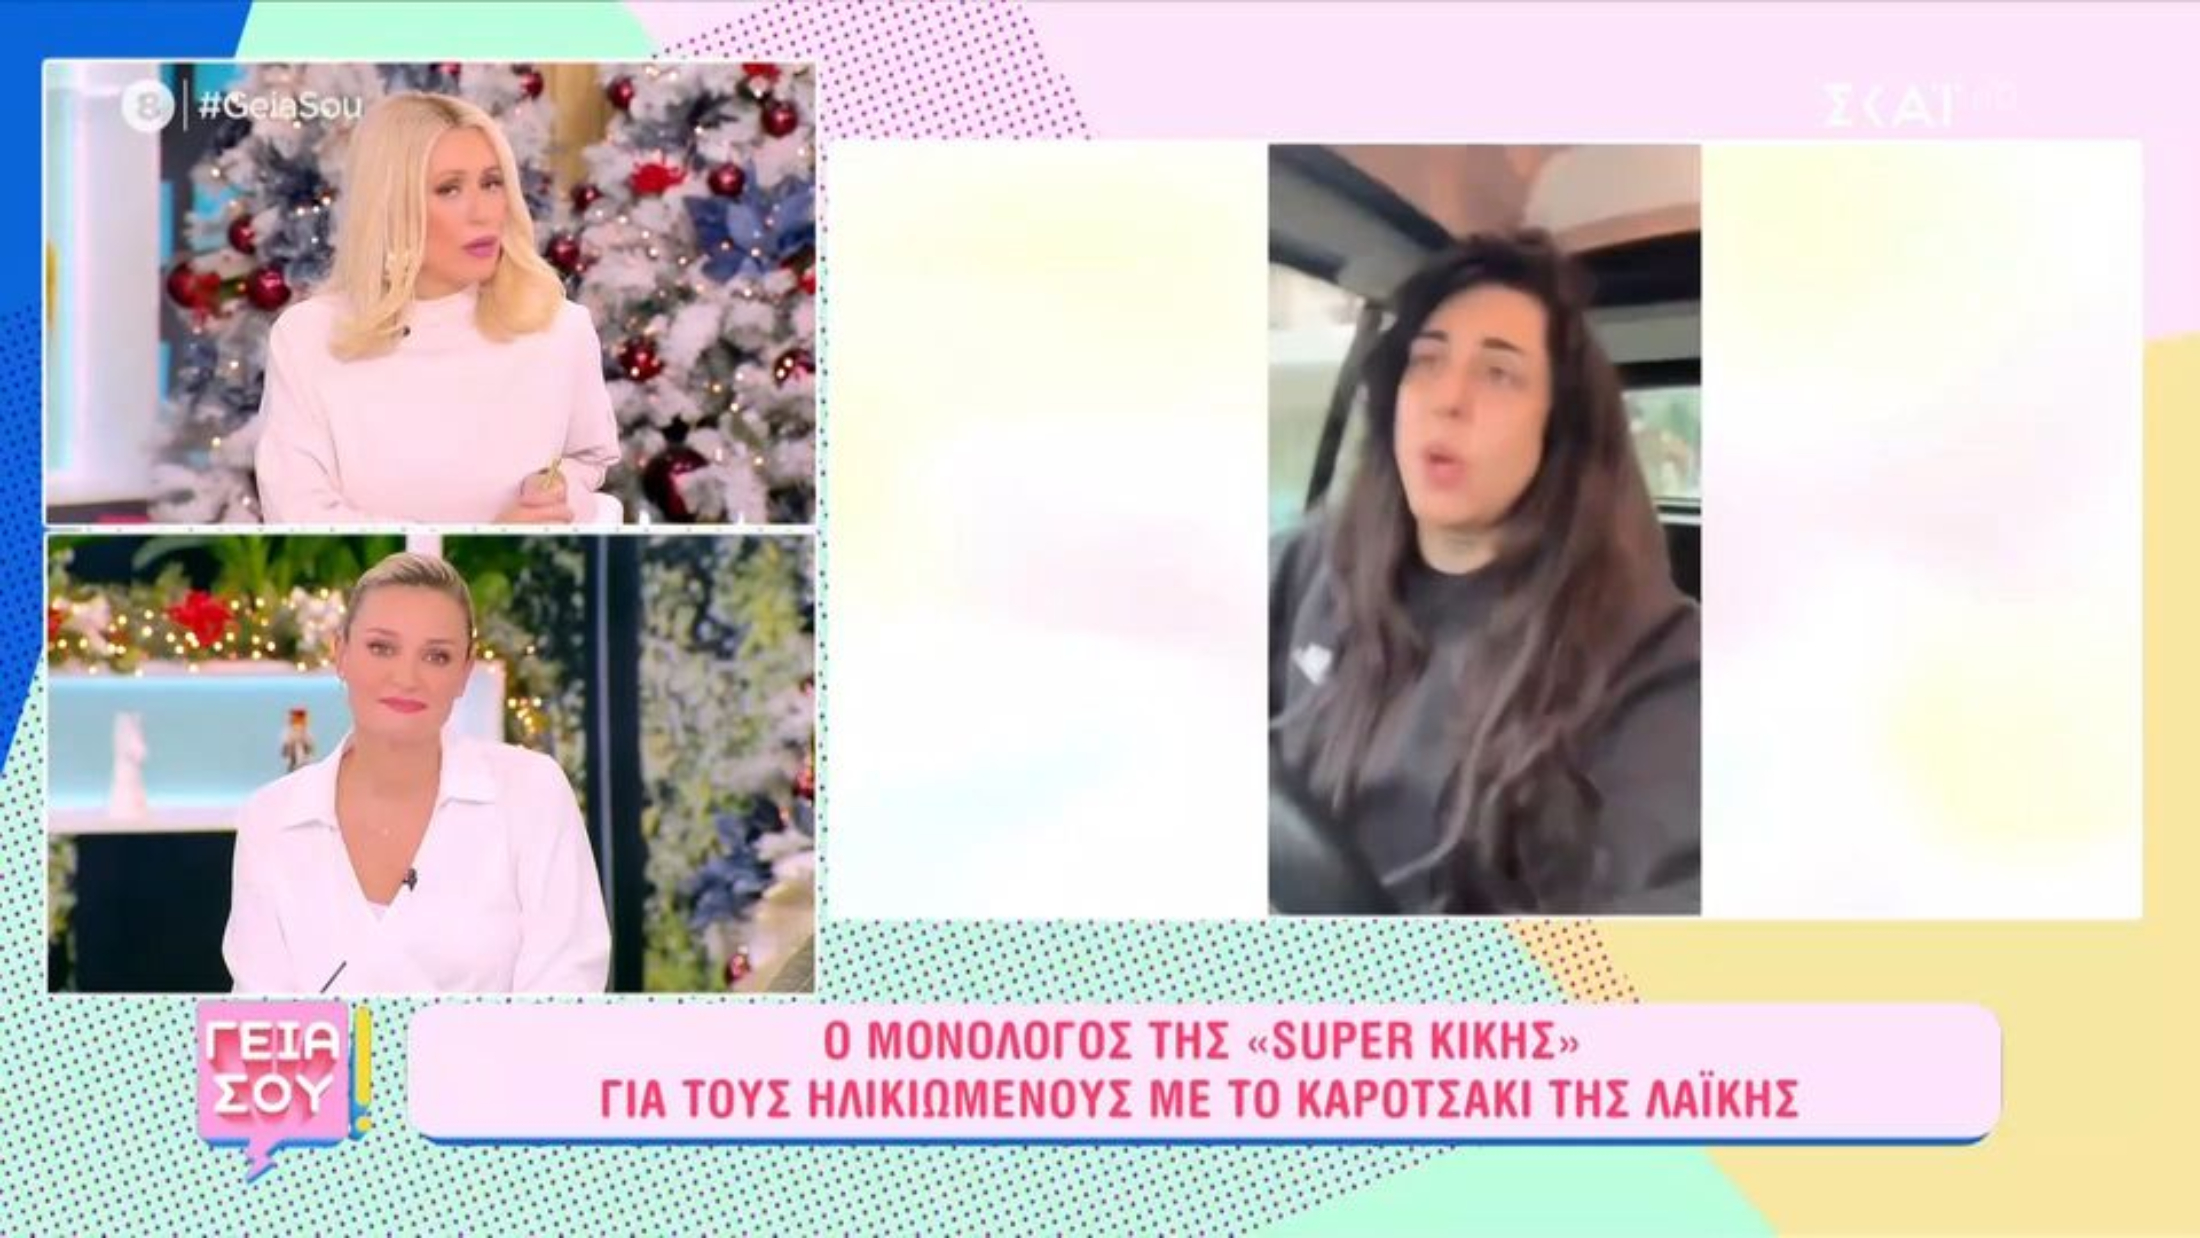 Η Μαρία Μπακοδήμου έκραξε την Super Κική: «Είναι απαράδεκτο, μην τρελαθούμε» (VIDEO)